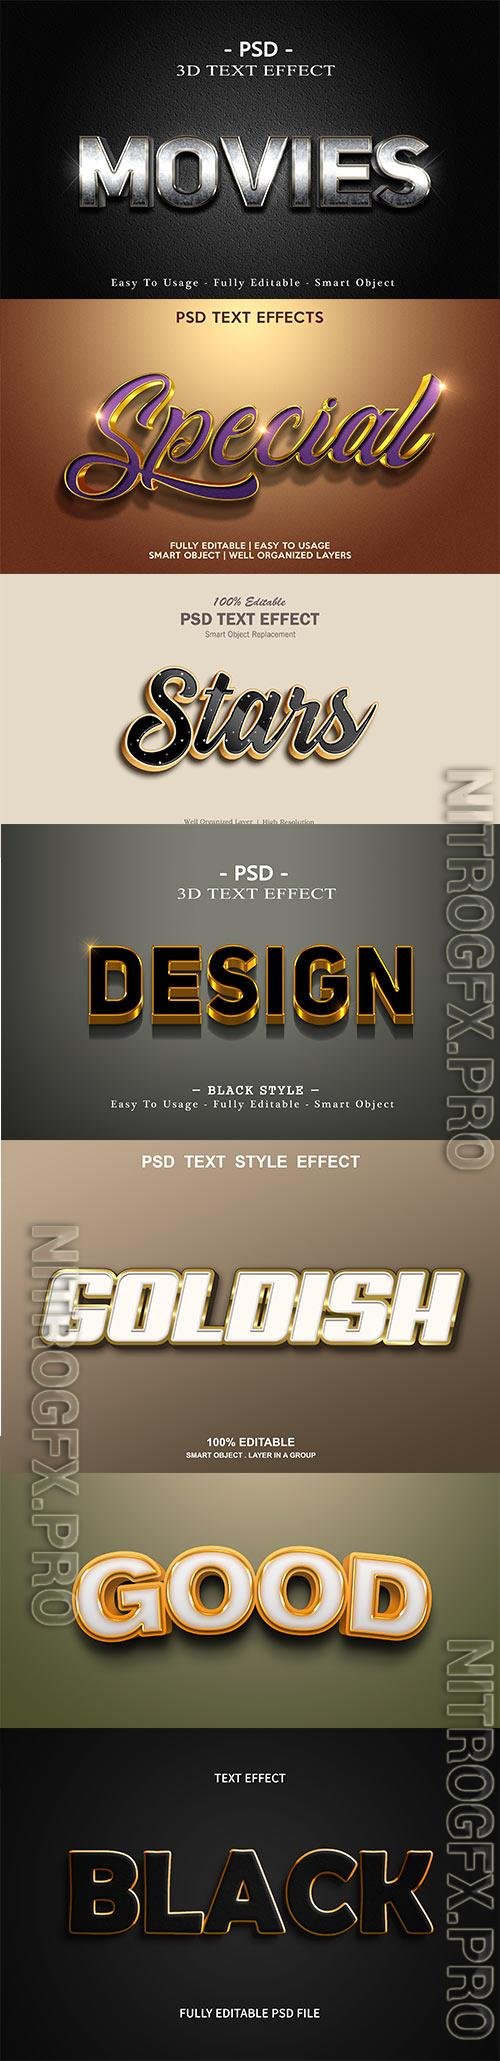 Psd text effect set vol 72